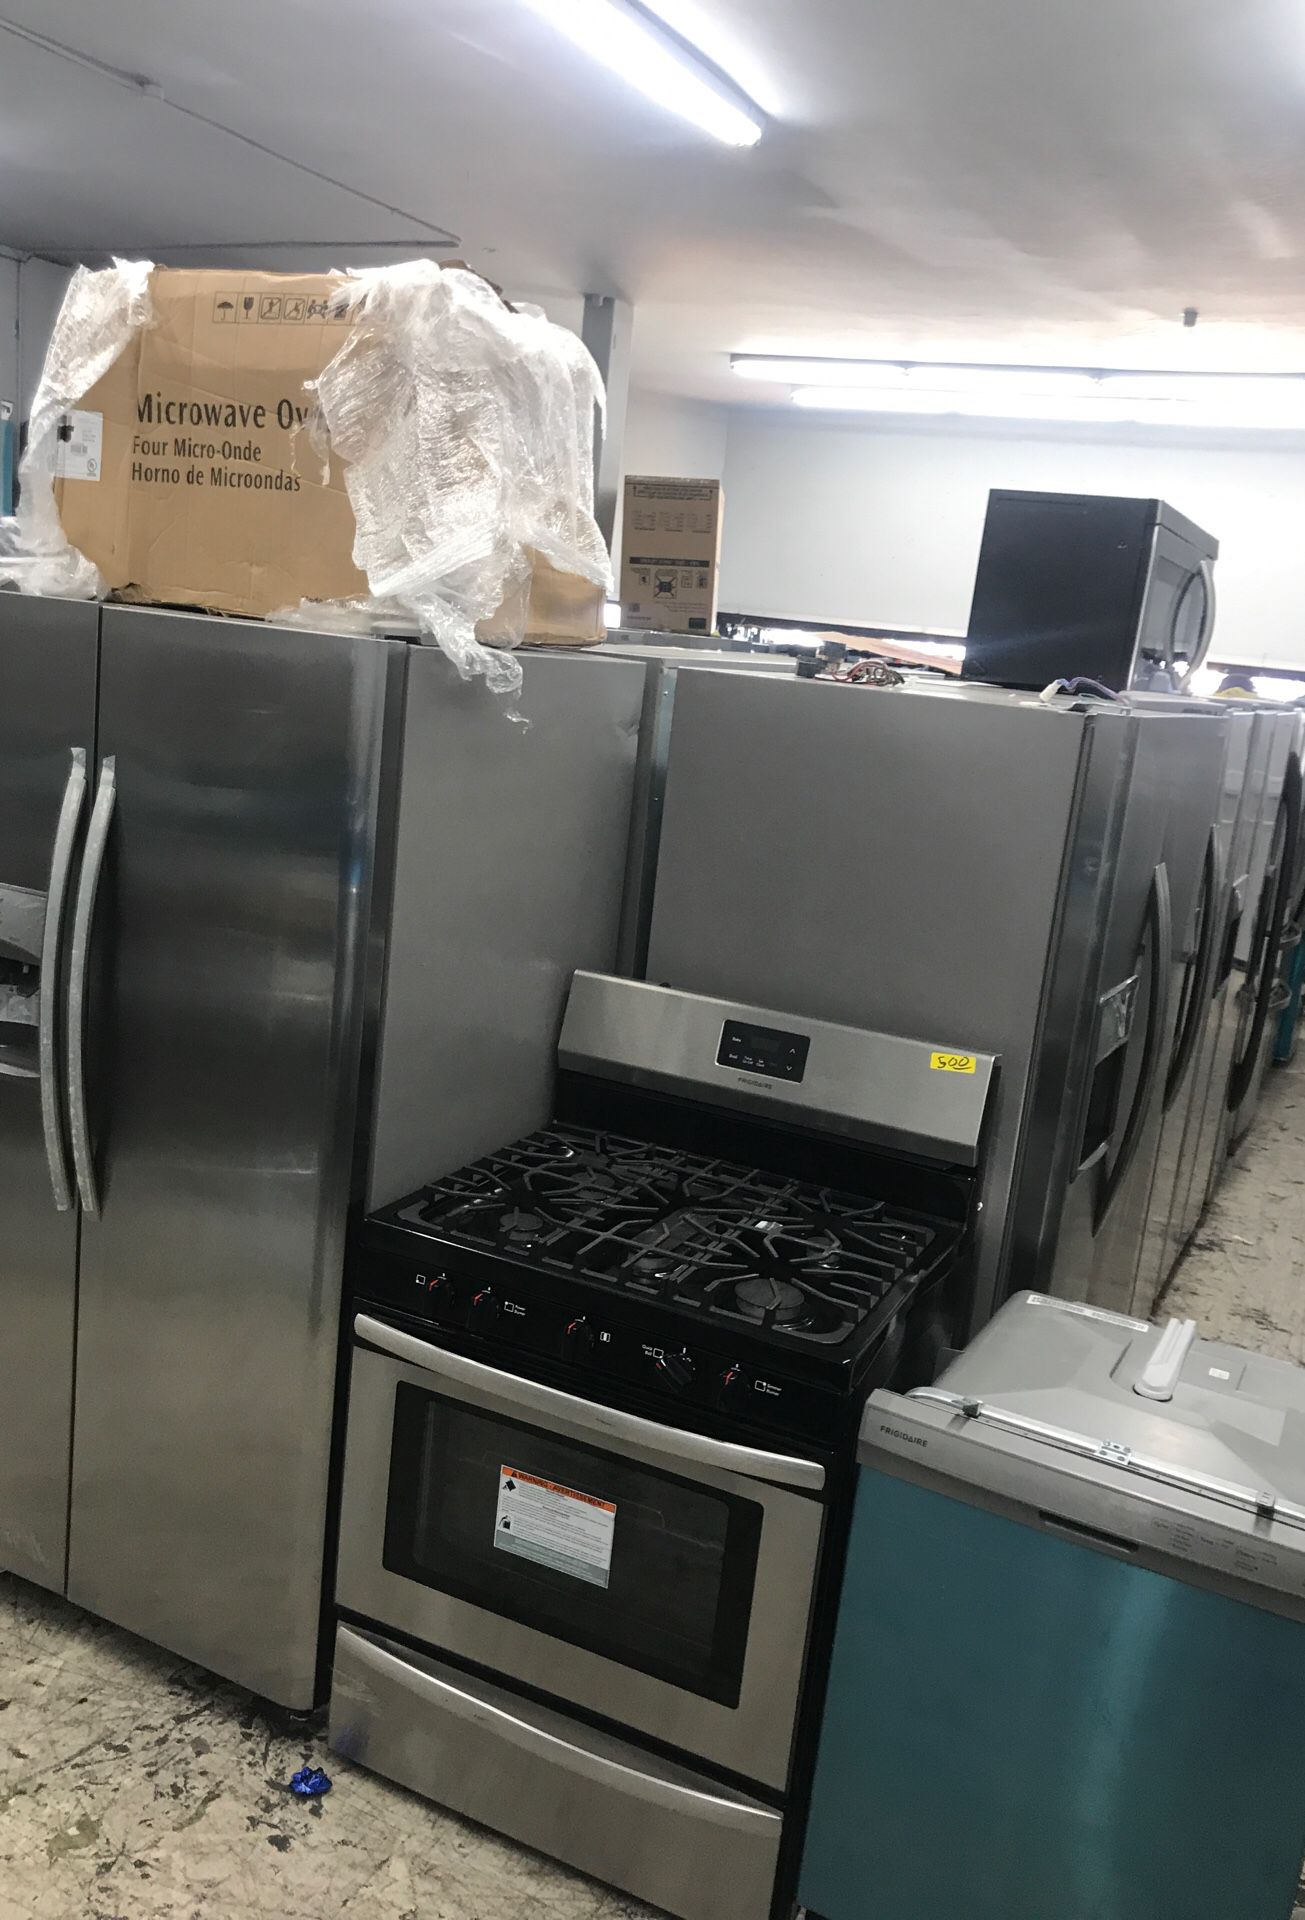 4 piece appliance bundle kitchen set 2019 Frigidaire stainless